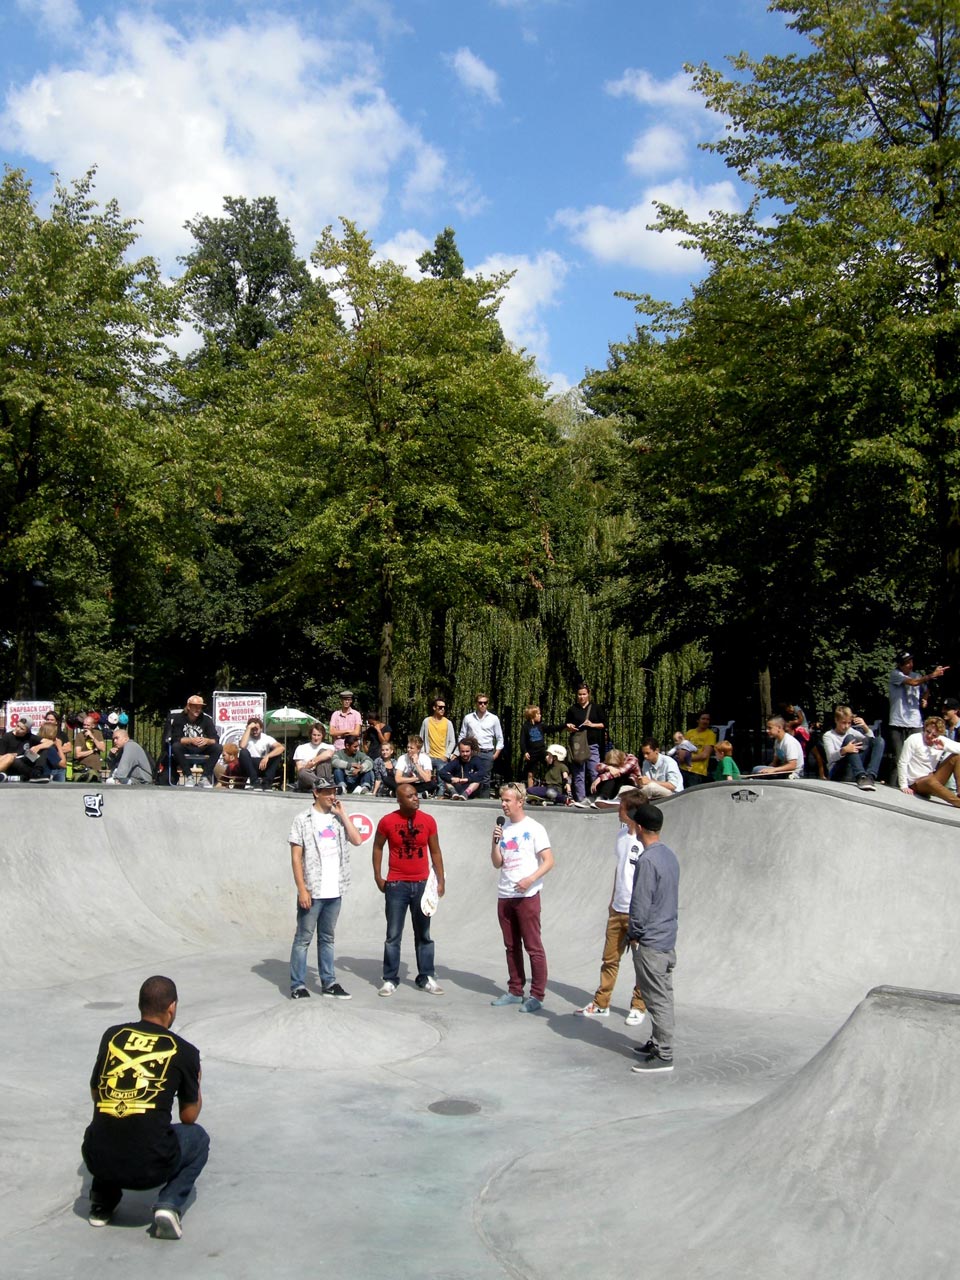 Skatepool Heemraadssingel officially opened!